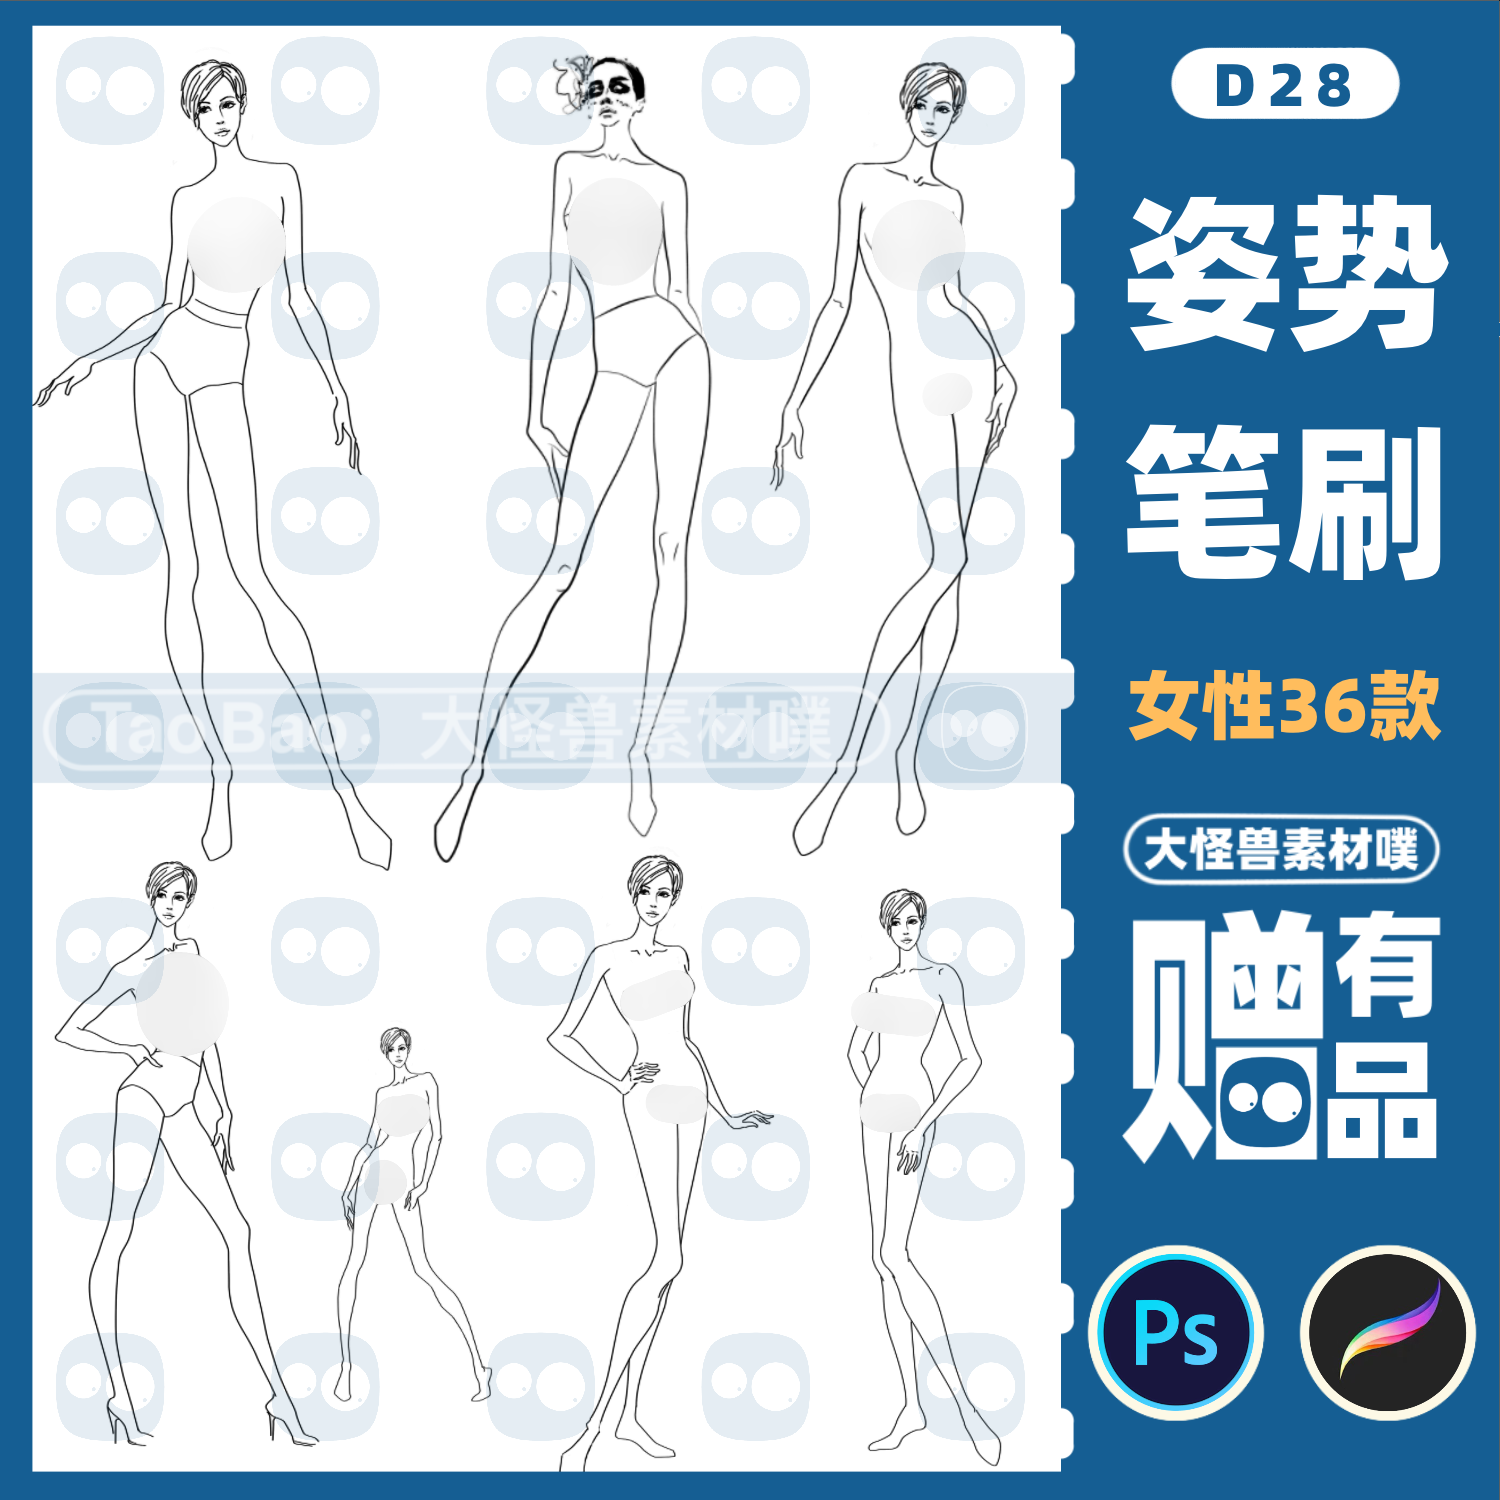 procreate笔刷人体ps女模特线稿服装设计参考姿势ipad手绘素材D28